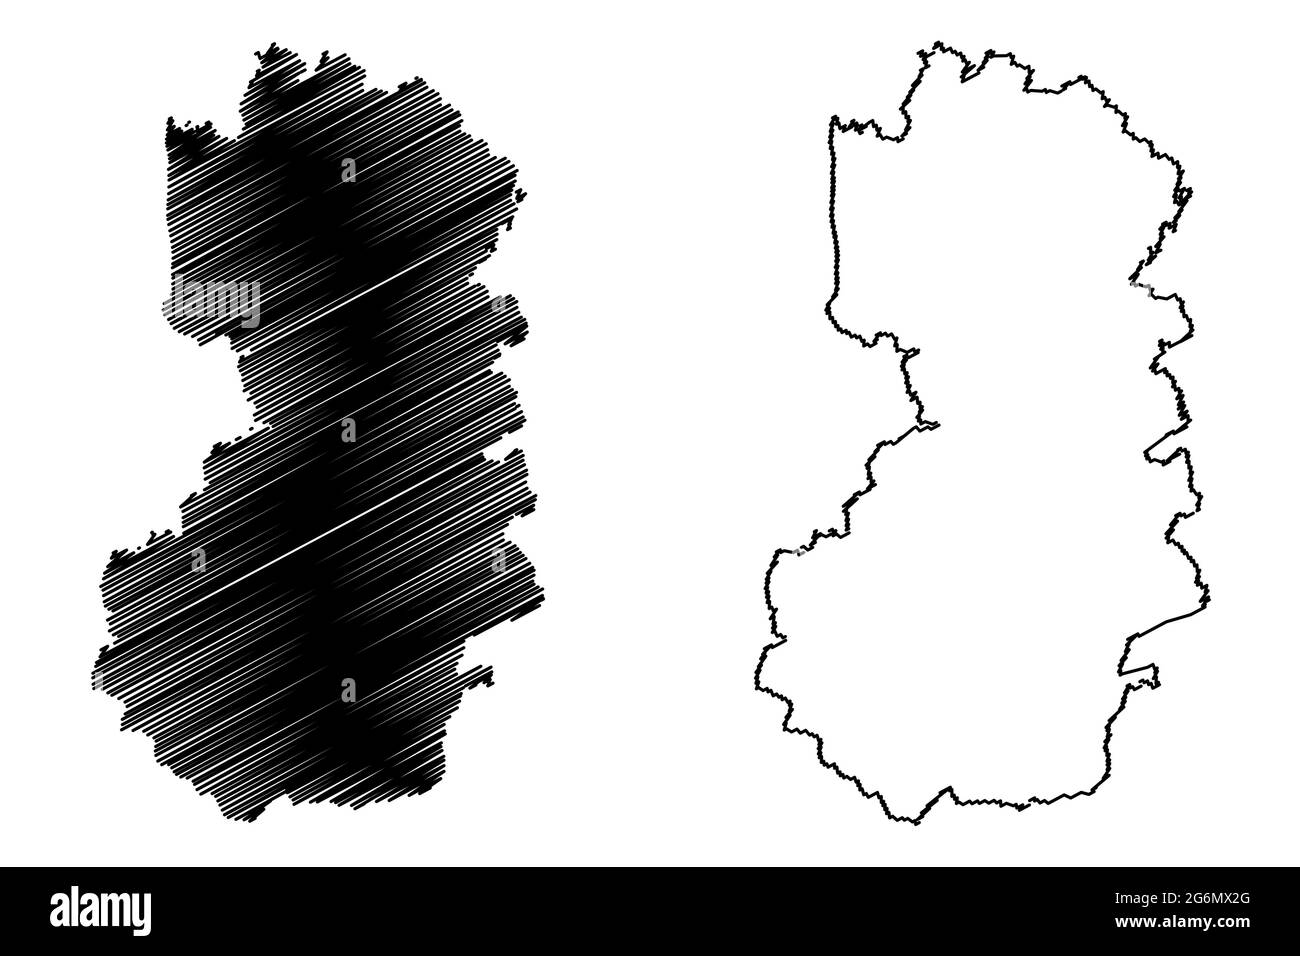 Landkreis Bad Tolz-Wolfratshausen (Bundesrepublik Deutschland, Landkreis Oberbayern, Freistaat Bayern) Kartenvektordarstellung, Kritzelei Stock Vektor